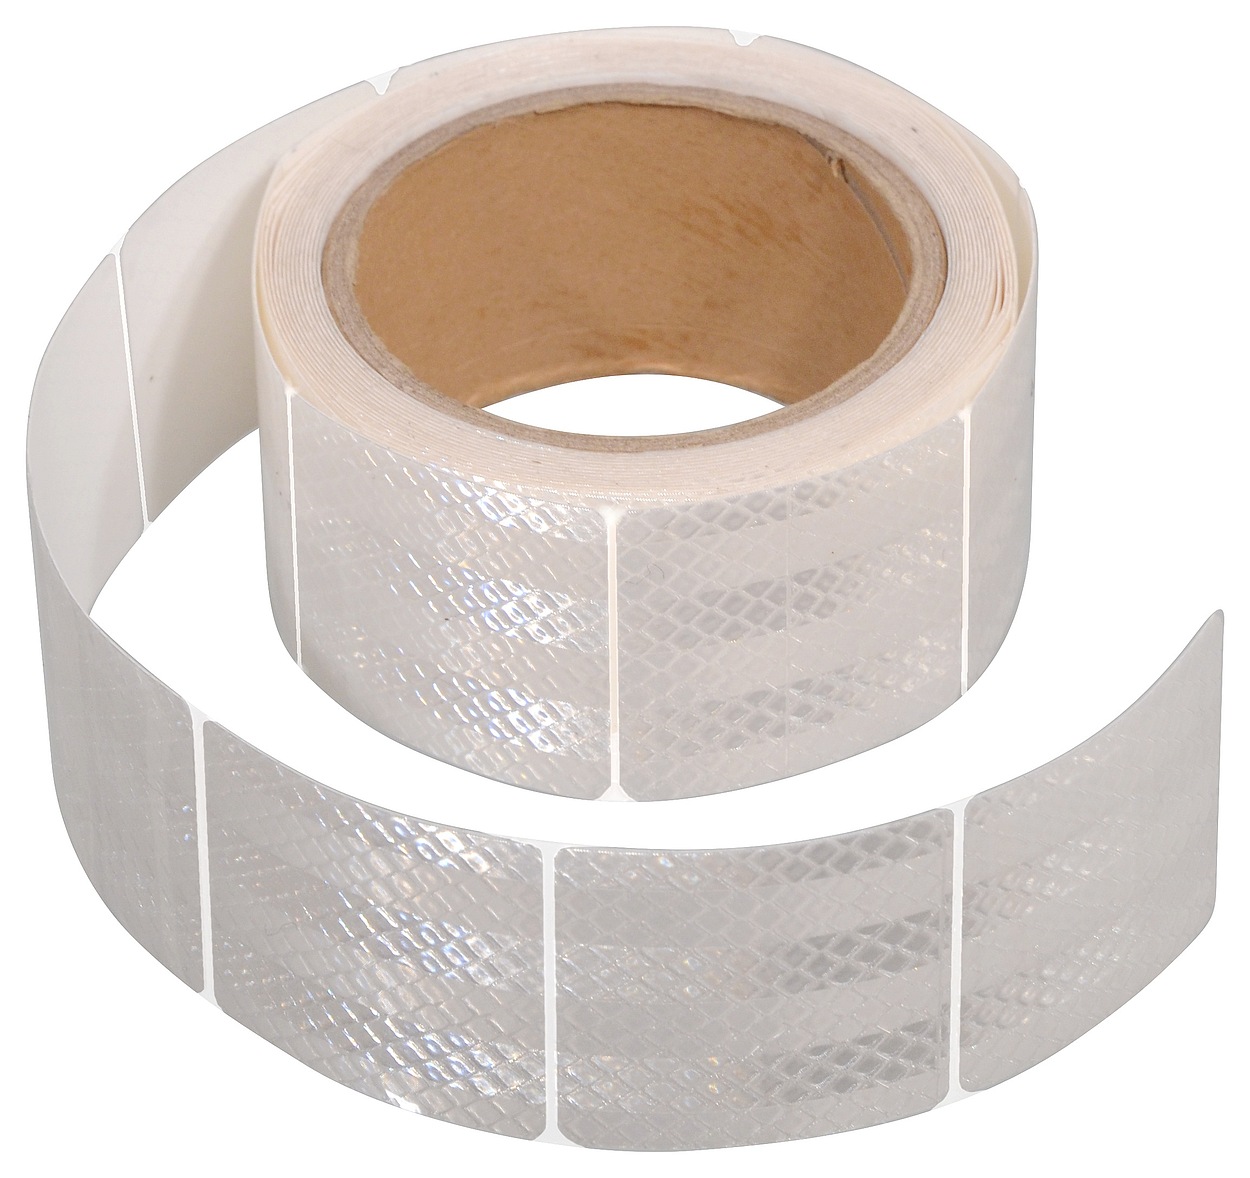 Samolepící páska reflexní dělená 5m x 5cm bílá (role 5m) 01548